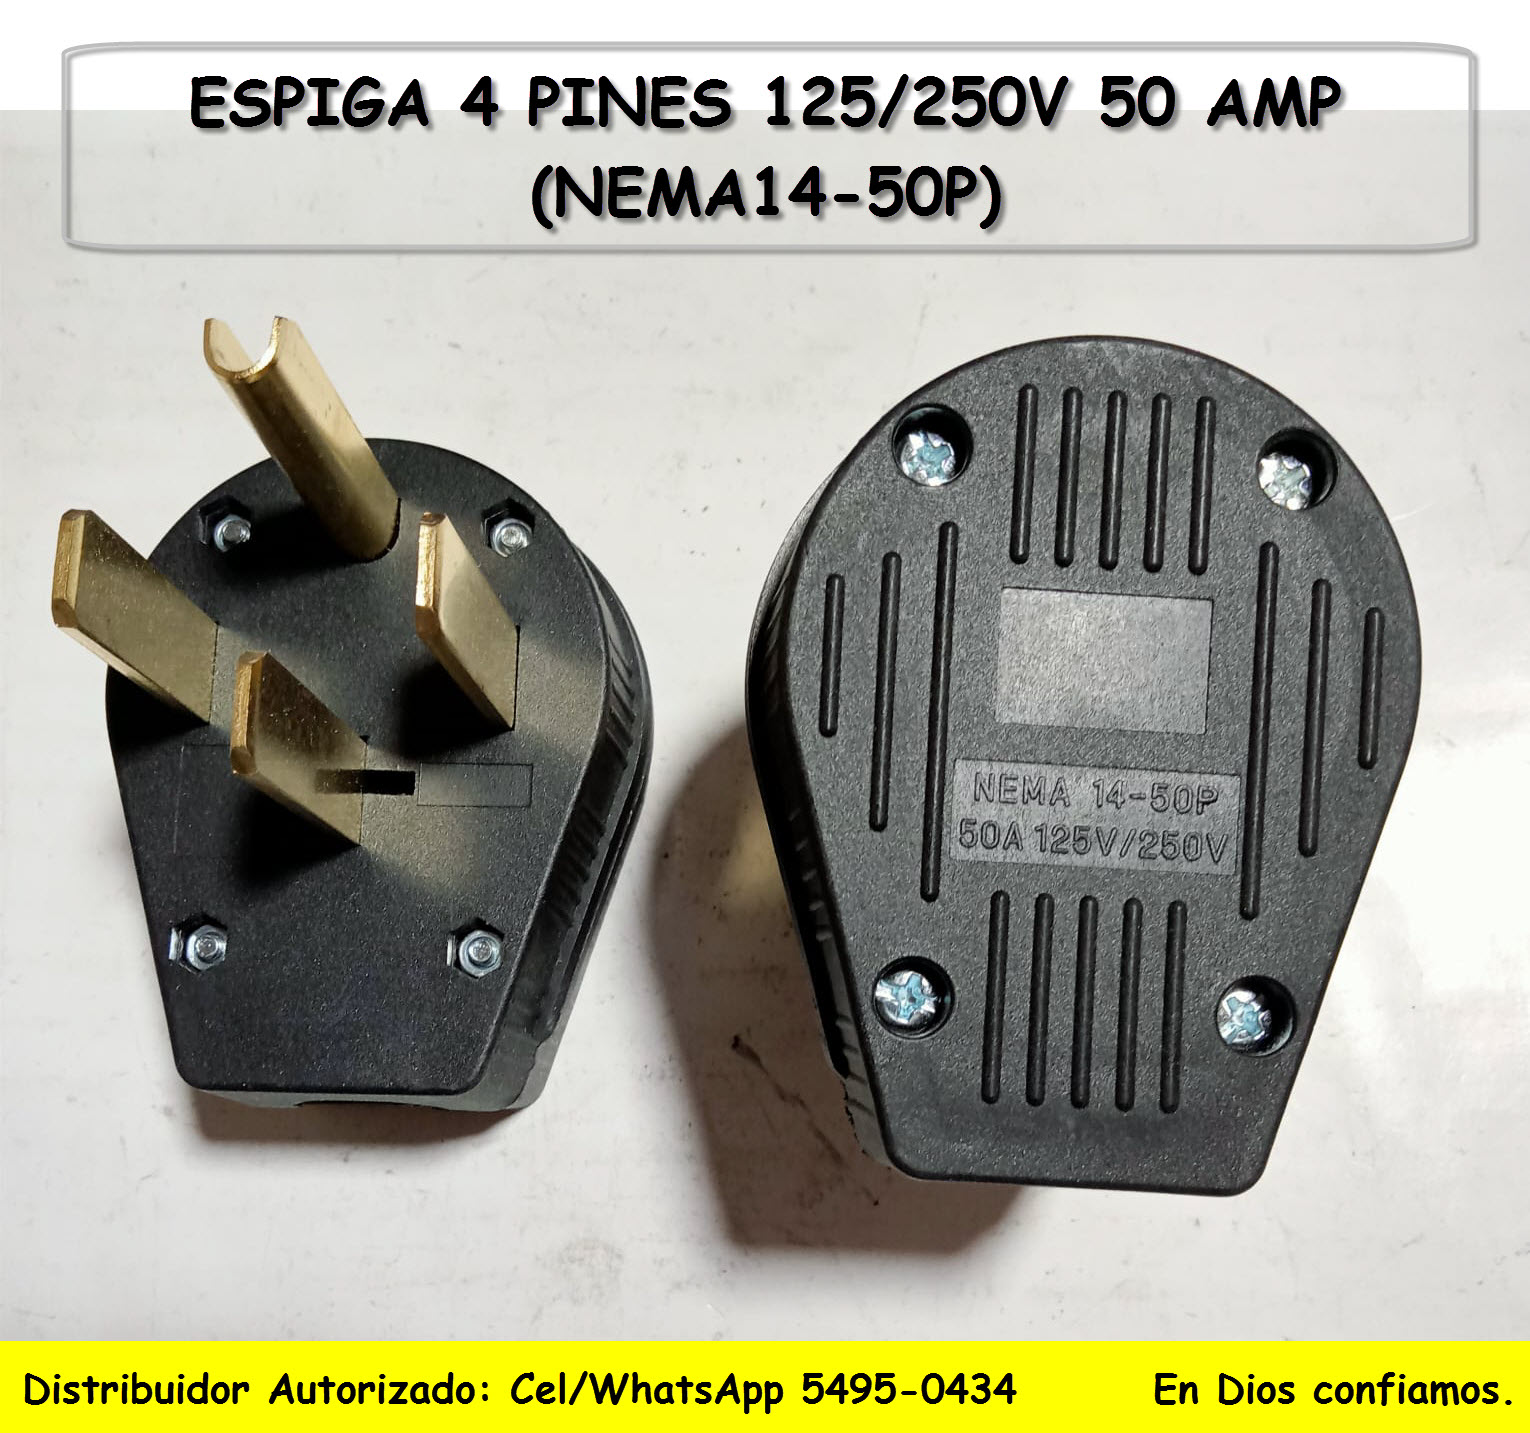 CONECTOR MACHO / ESPIGA NEMA 14-50P 50A 125/250V